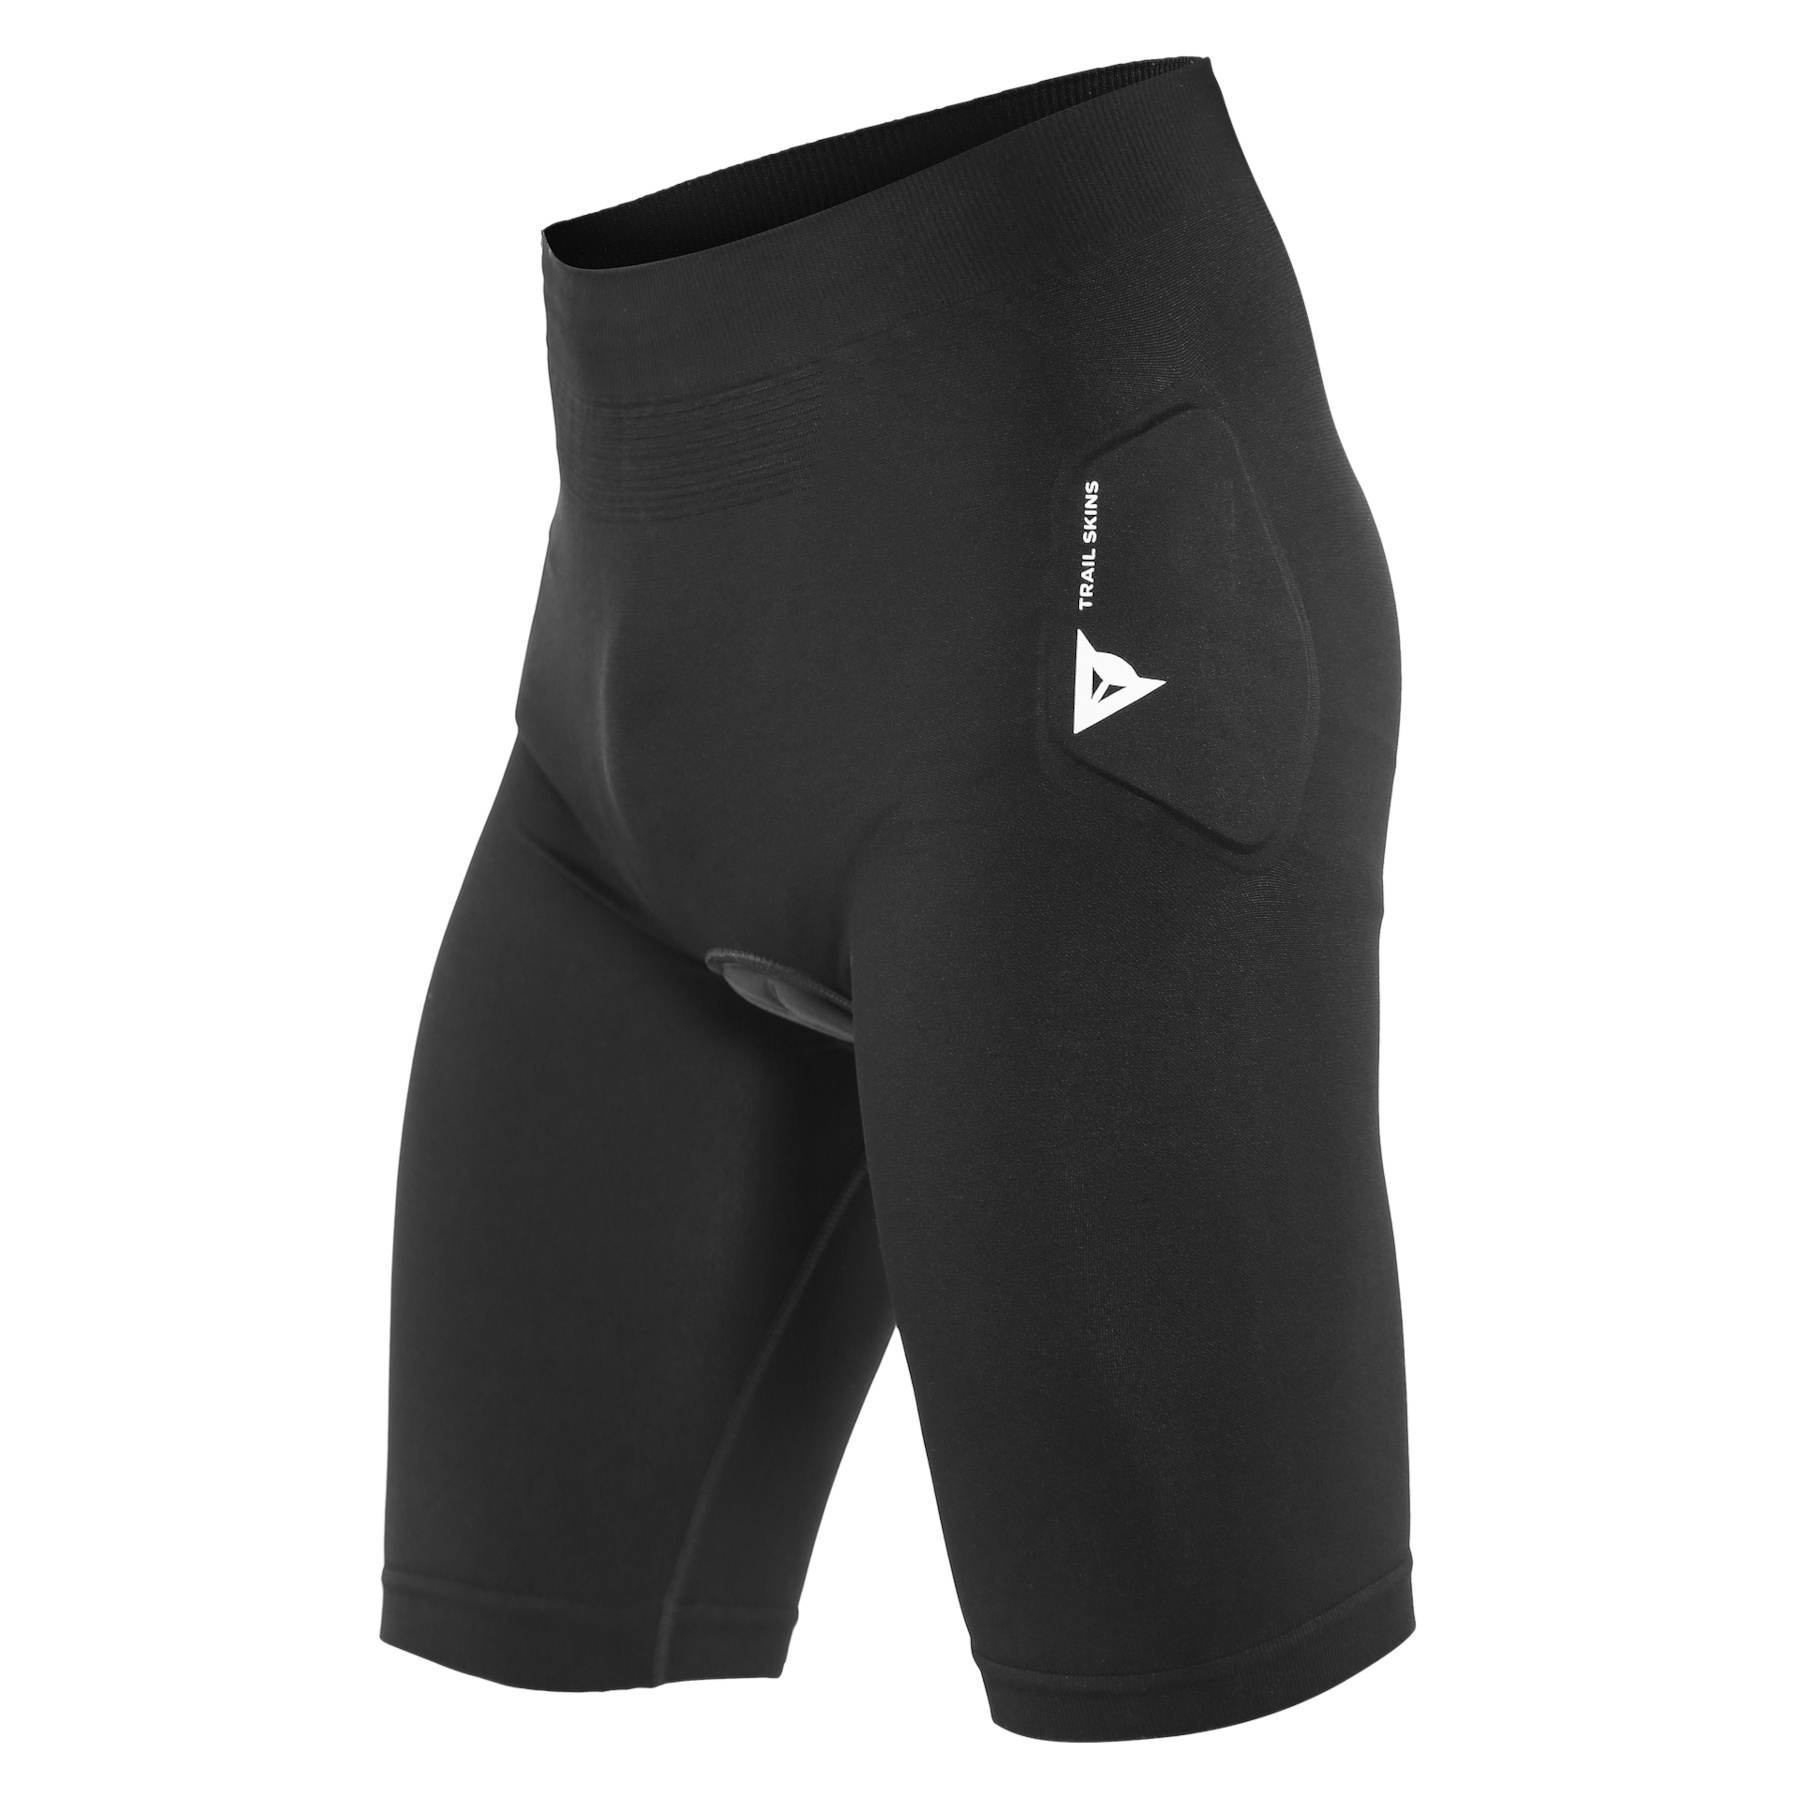 Produktbild von Dainese Trail Skins Protektoren-Shorts - schwarz